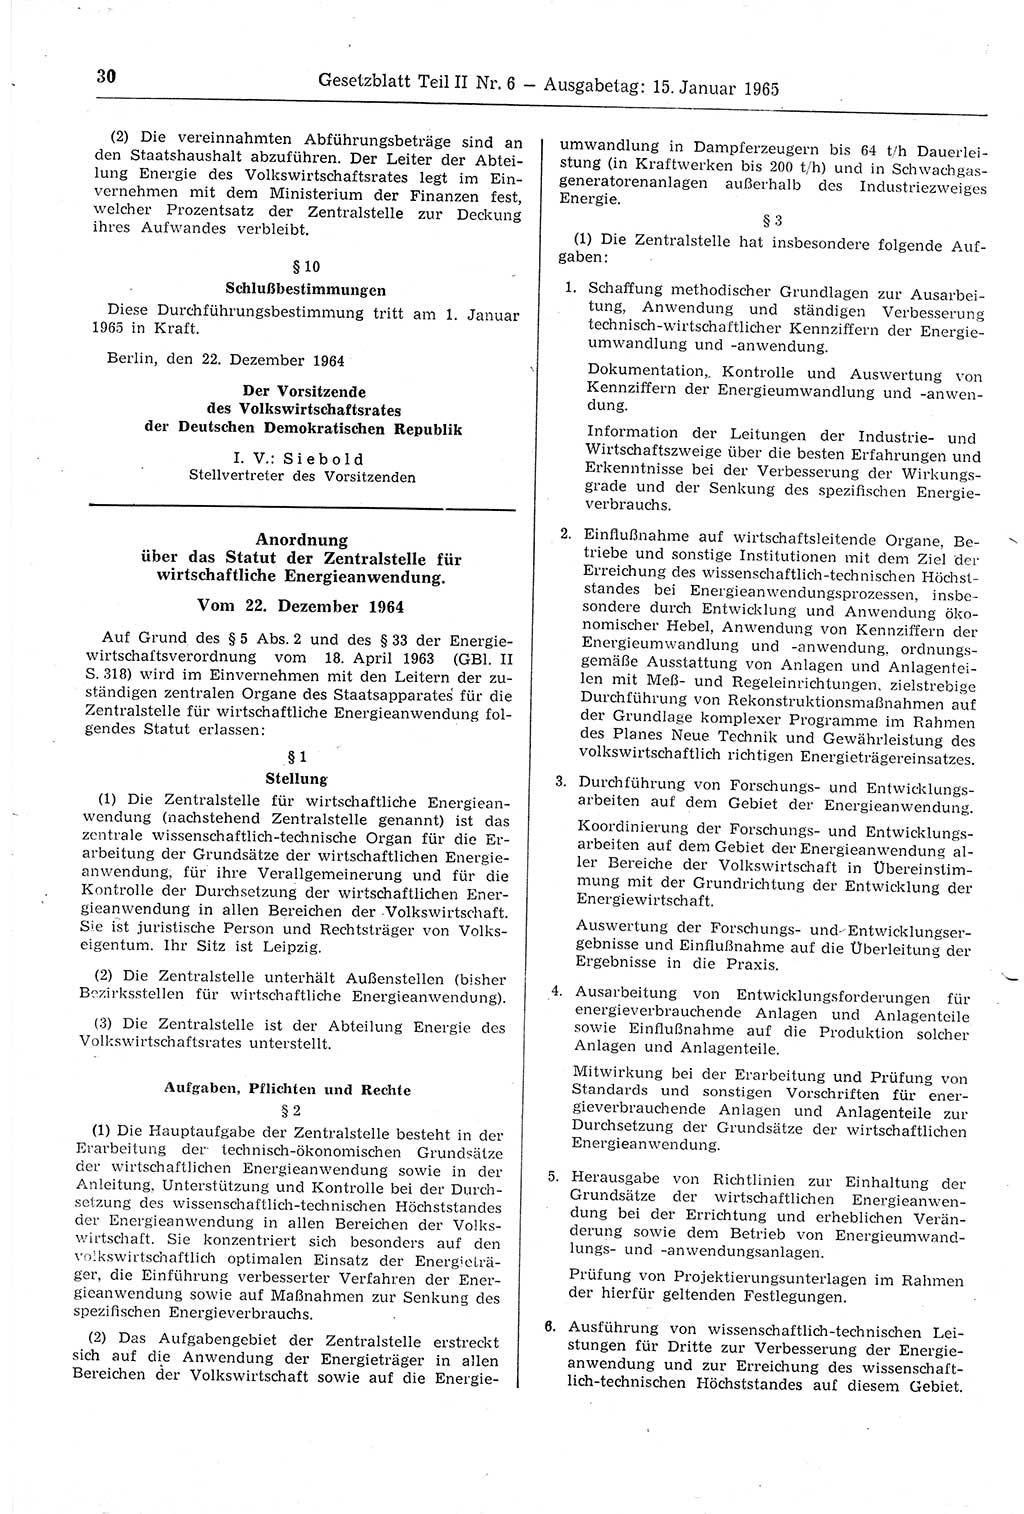 Gesetzblatt (GBl.) der Deutschen Demokratischen Republik (DDR) Teil ⅠⅠ 1965, Seite 30 (GBl. DDR ⅠⅠ 1965, S. 30)